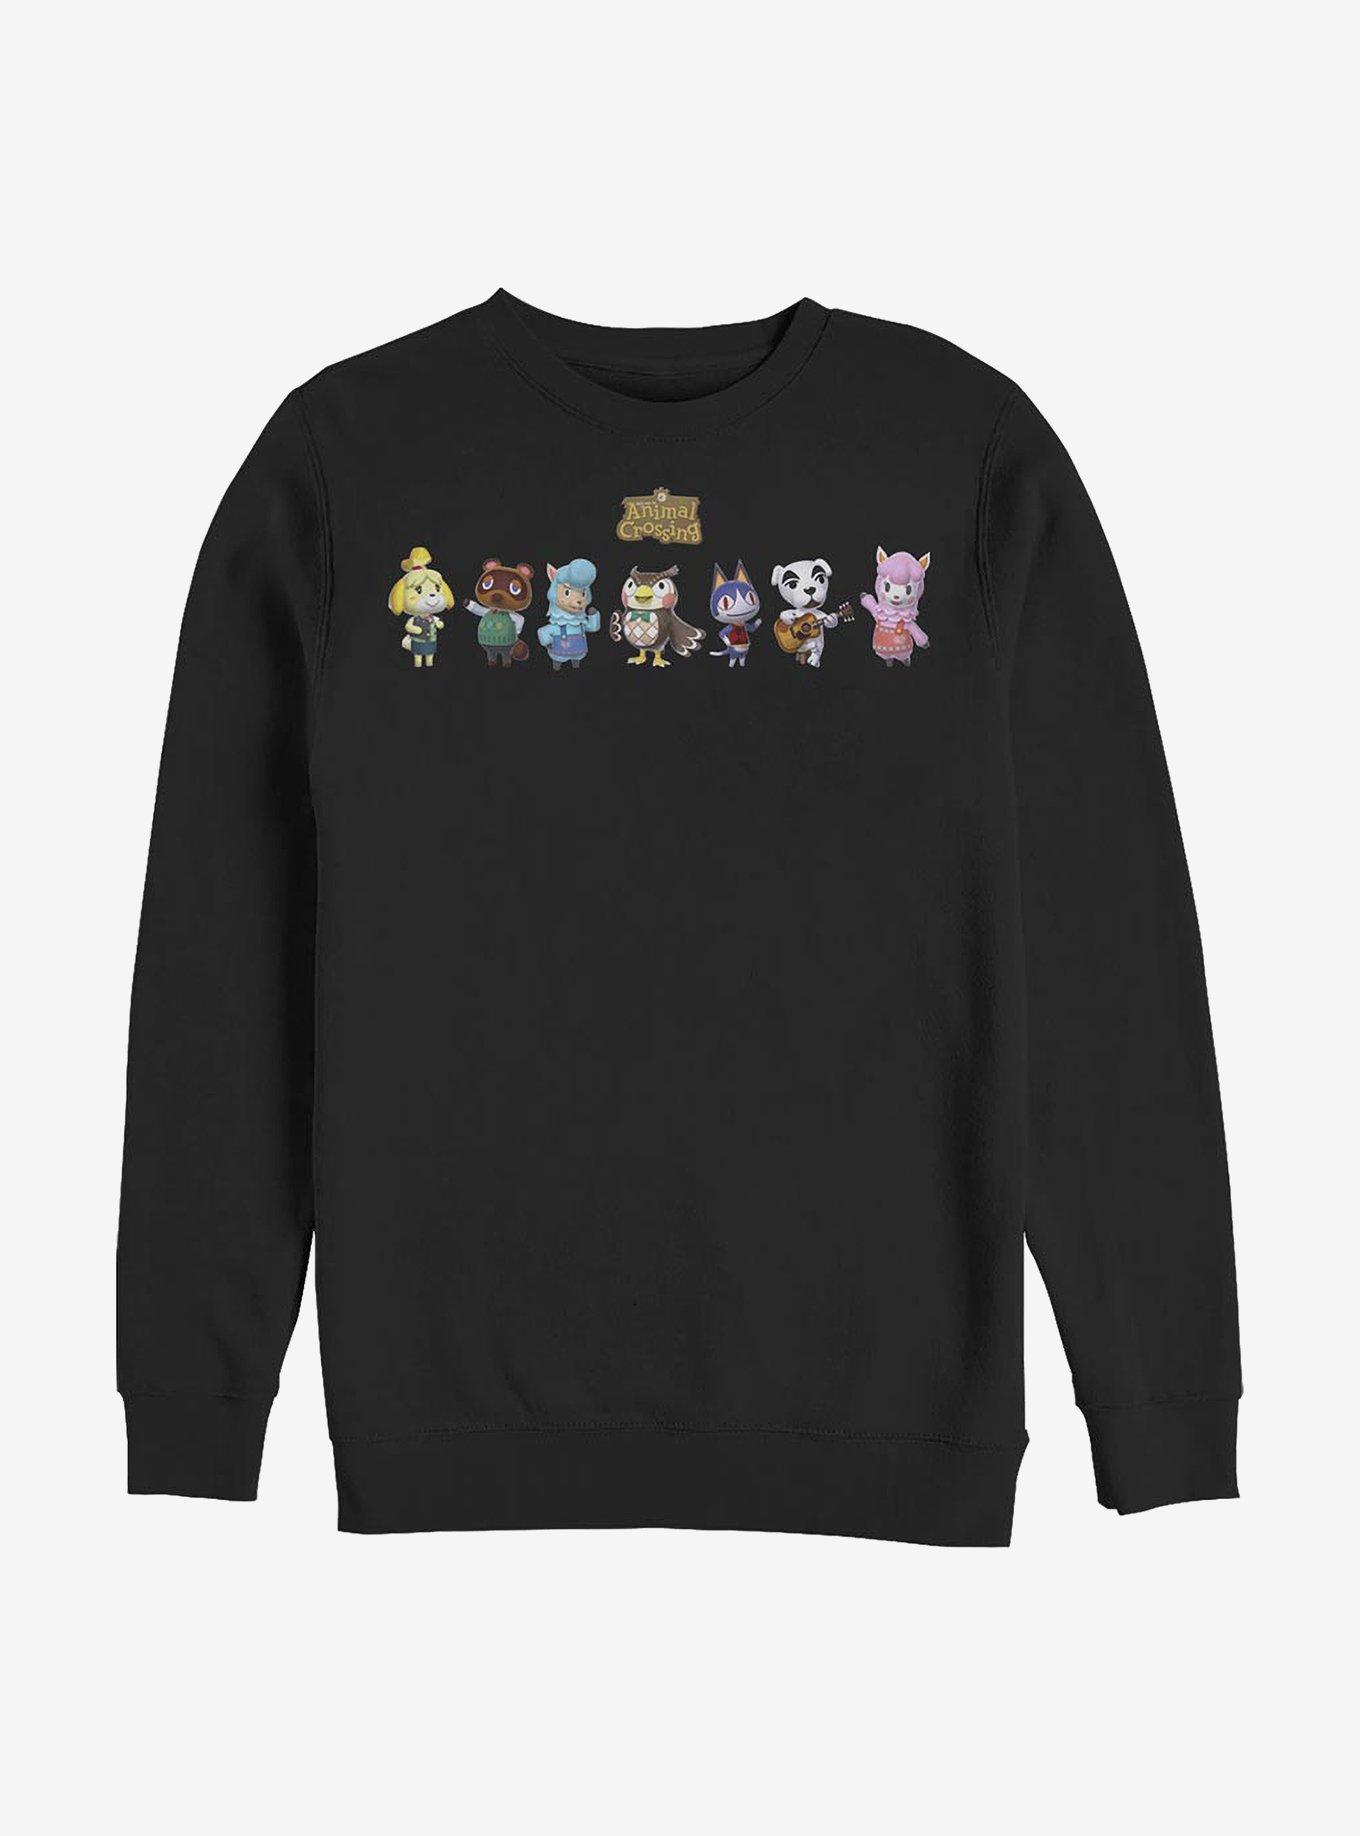 Animal Crossing Friendly Neighbors Sweatshirt, BLACK, hi-res